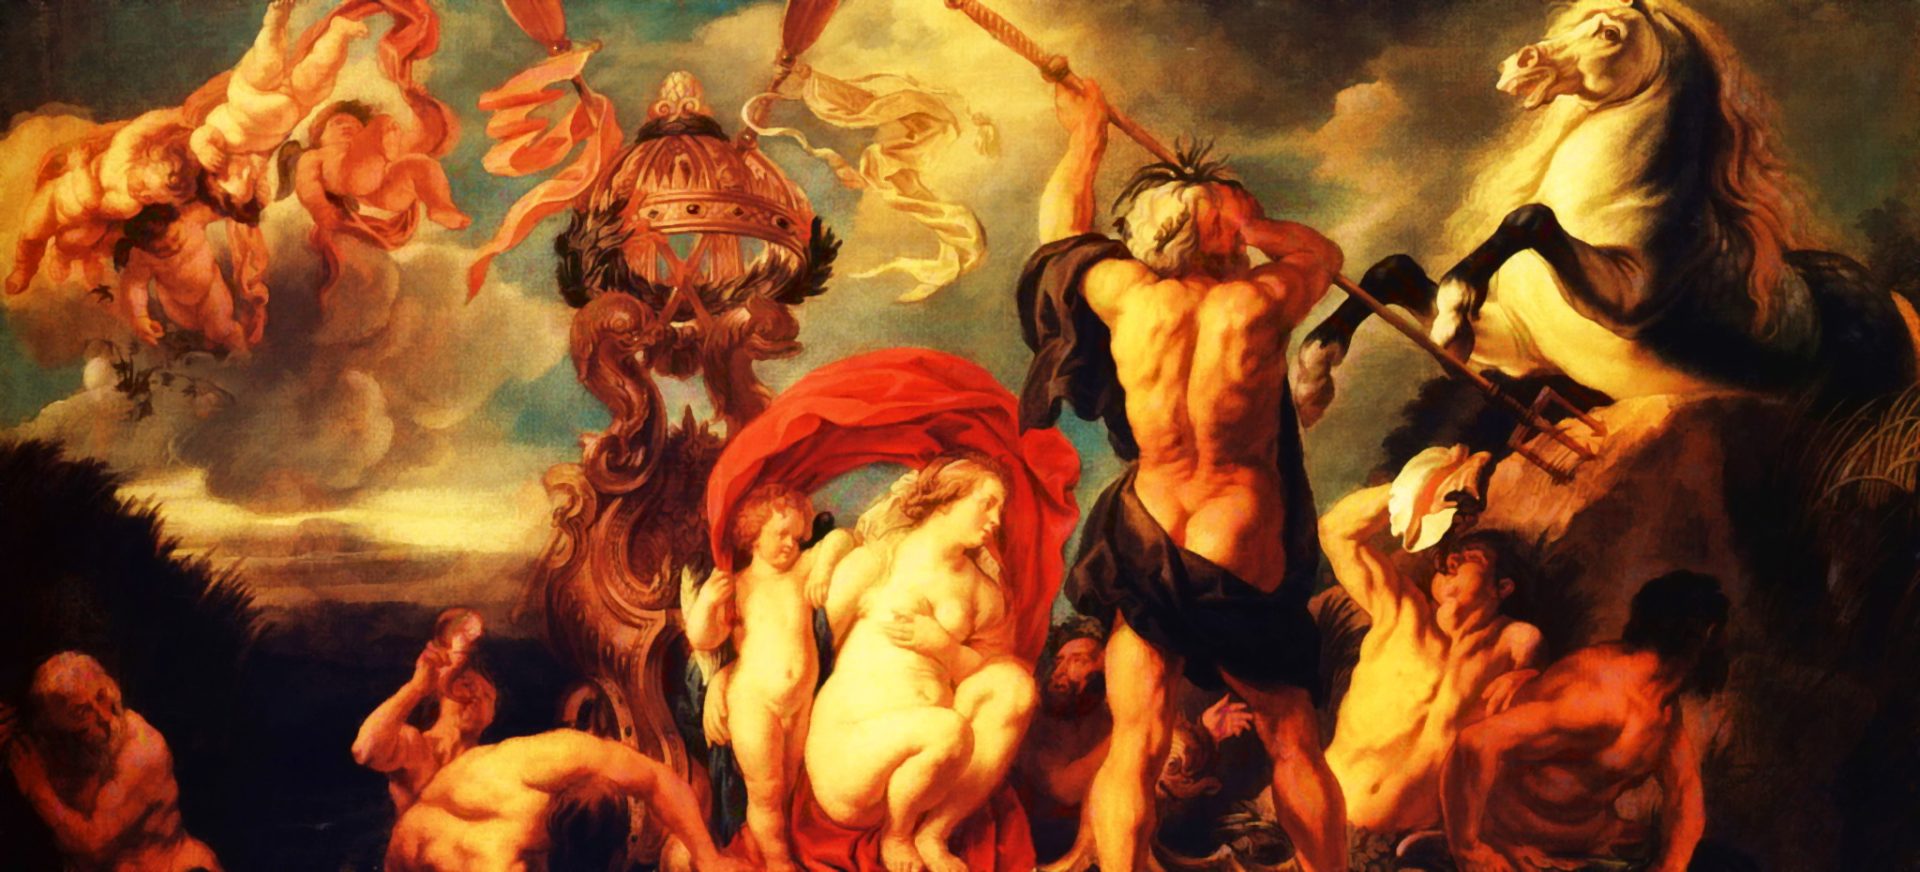 Древняя Греция и герои Эллады... Бог морей Нептун — в древнеримской мифологии бог морей и потоков. Один из древнейших римских богов. Позднее был отождествлён с греческим богом Посейдоном.